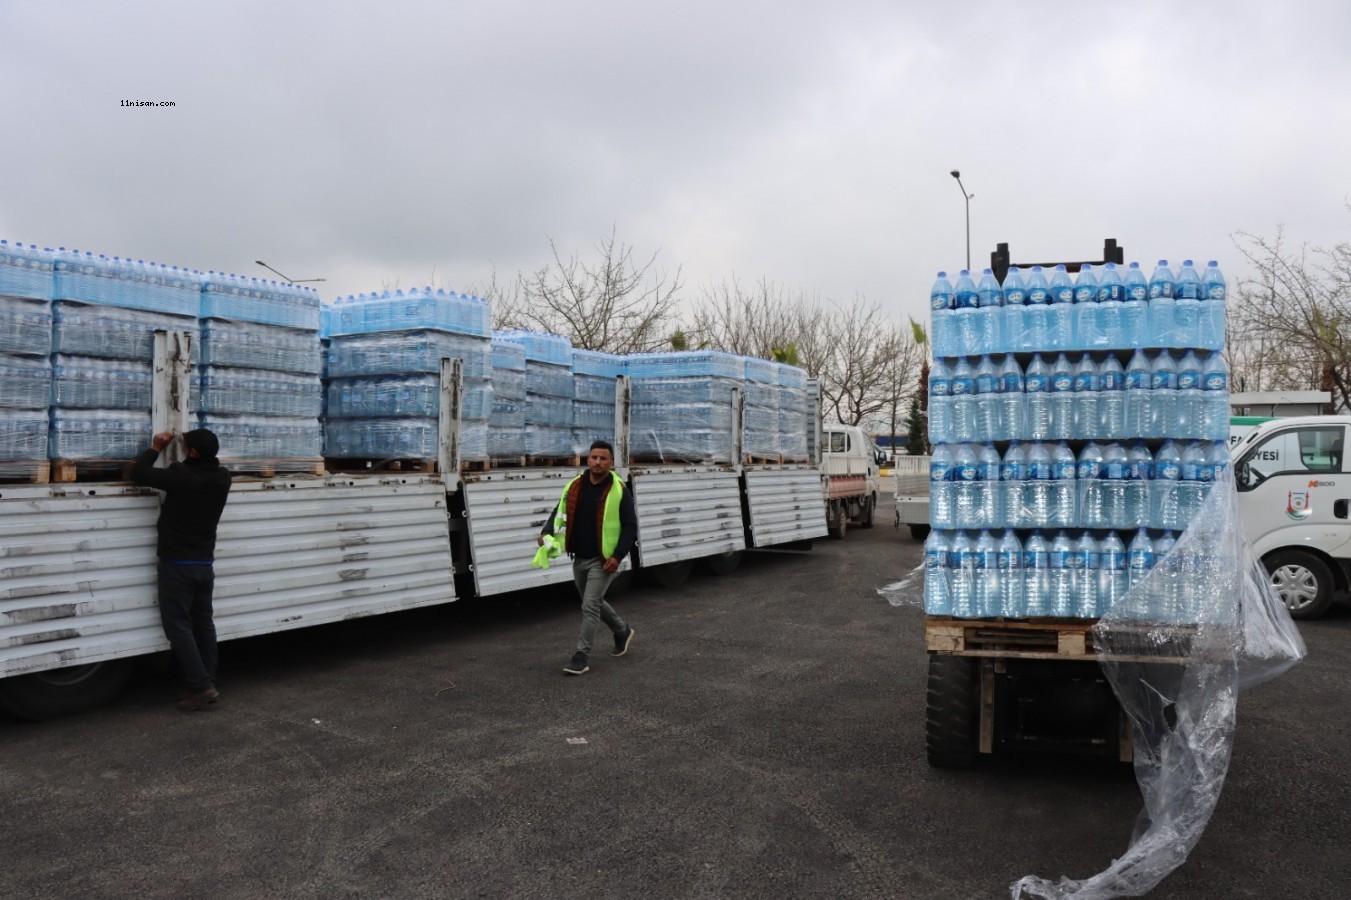 Büyükşehir Belediyesinden vatandaşlara hazır su dağıtımı başladı;